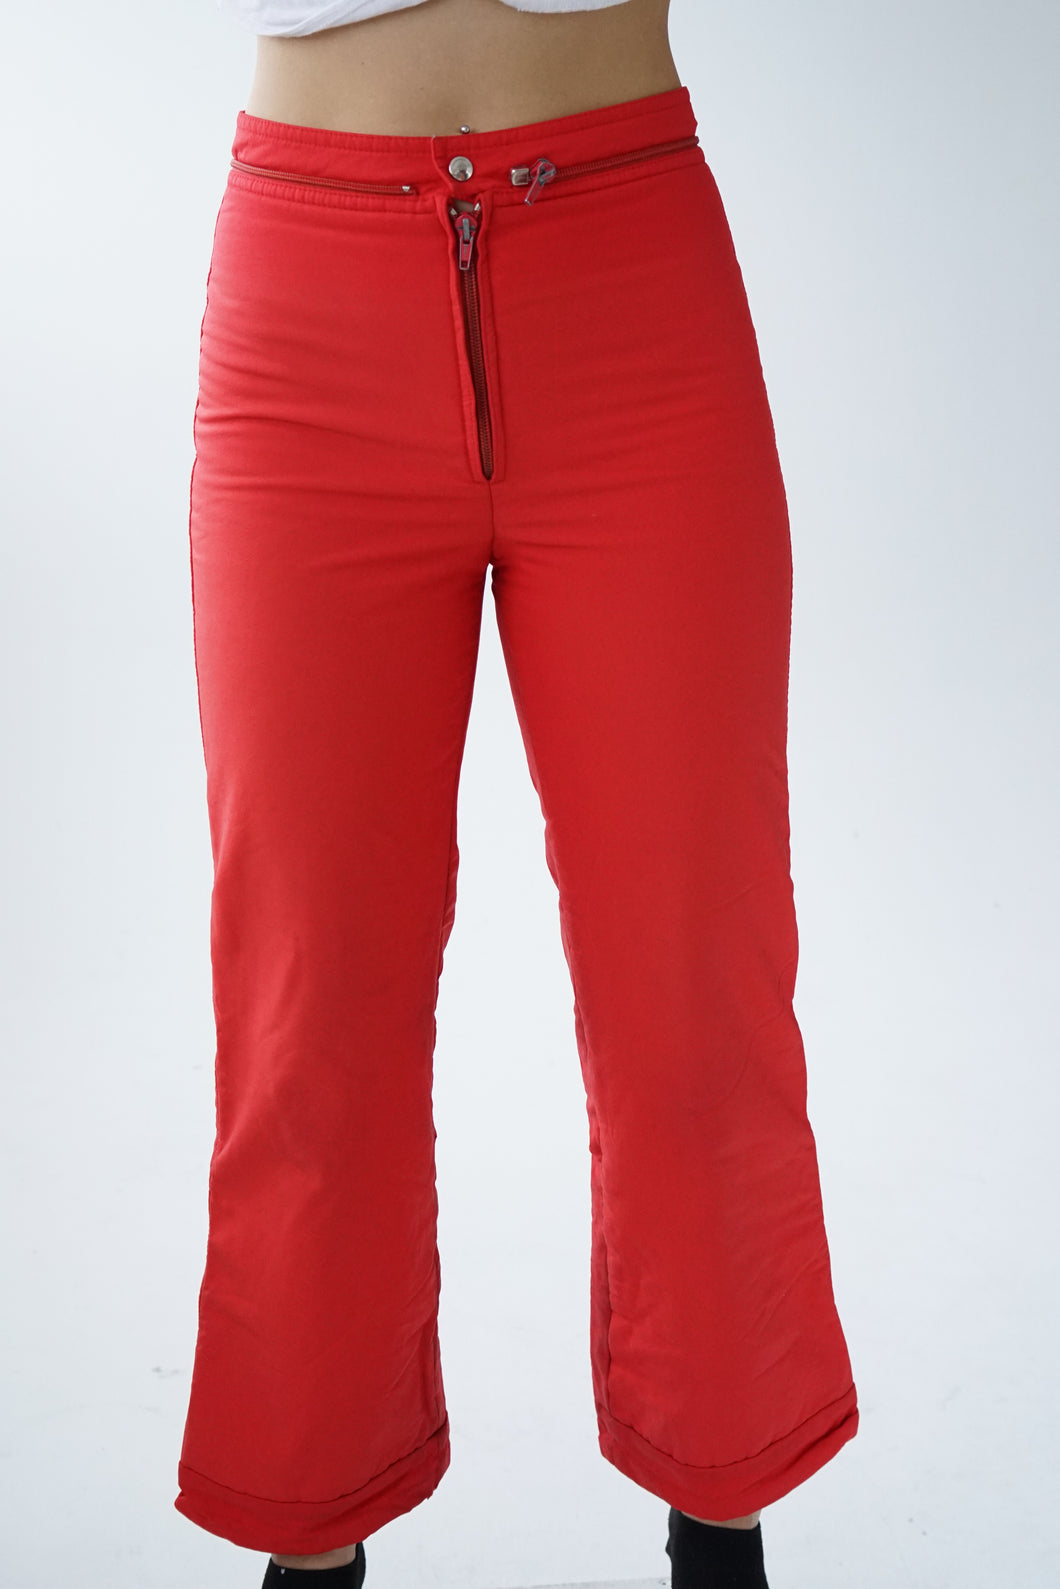 Pantalon de neige mince en nylon vintage 60s rouge pour femme taille XS